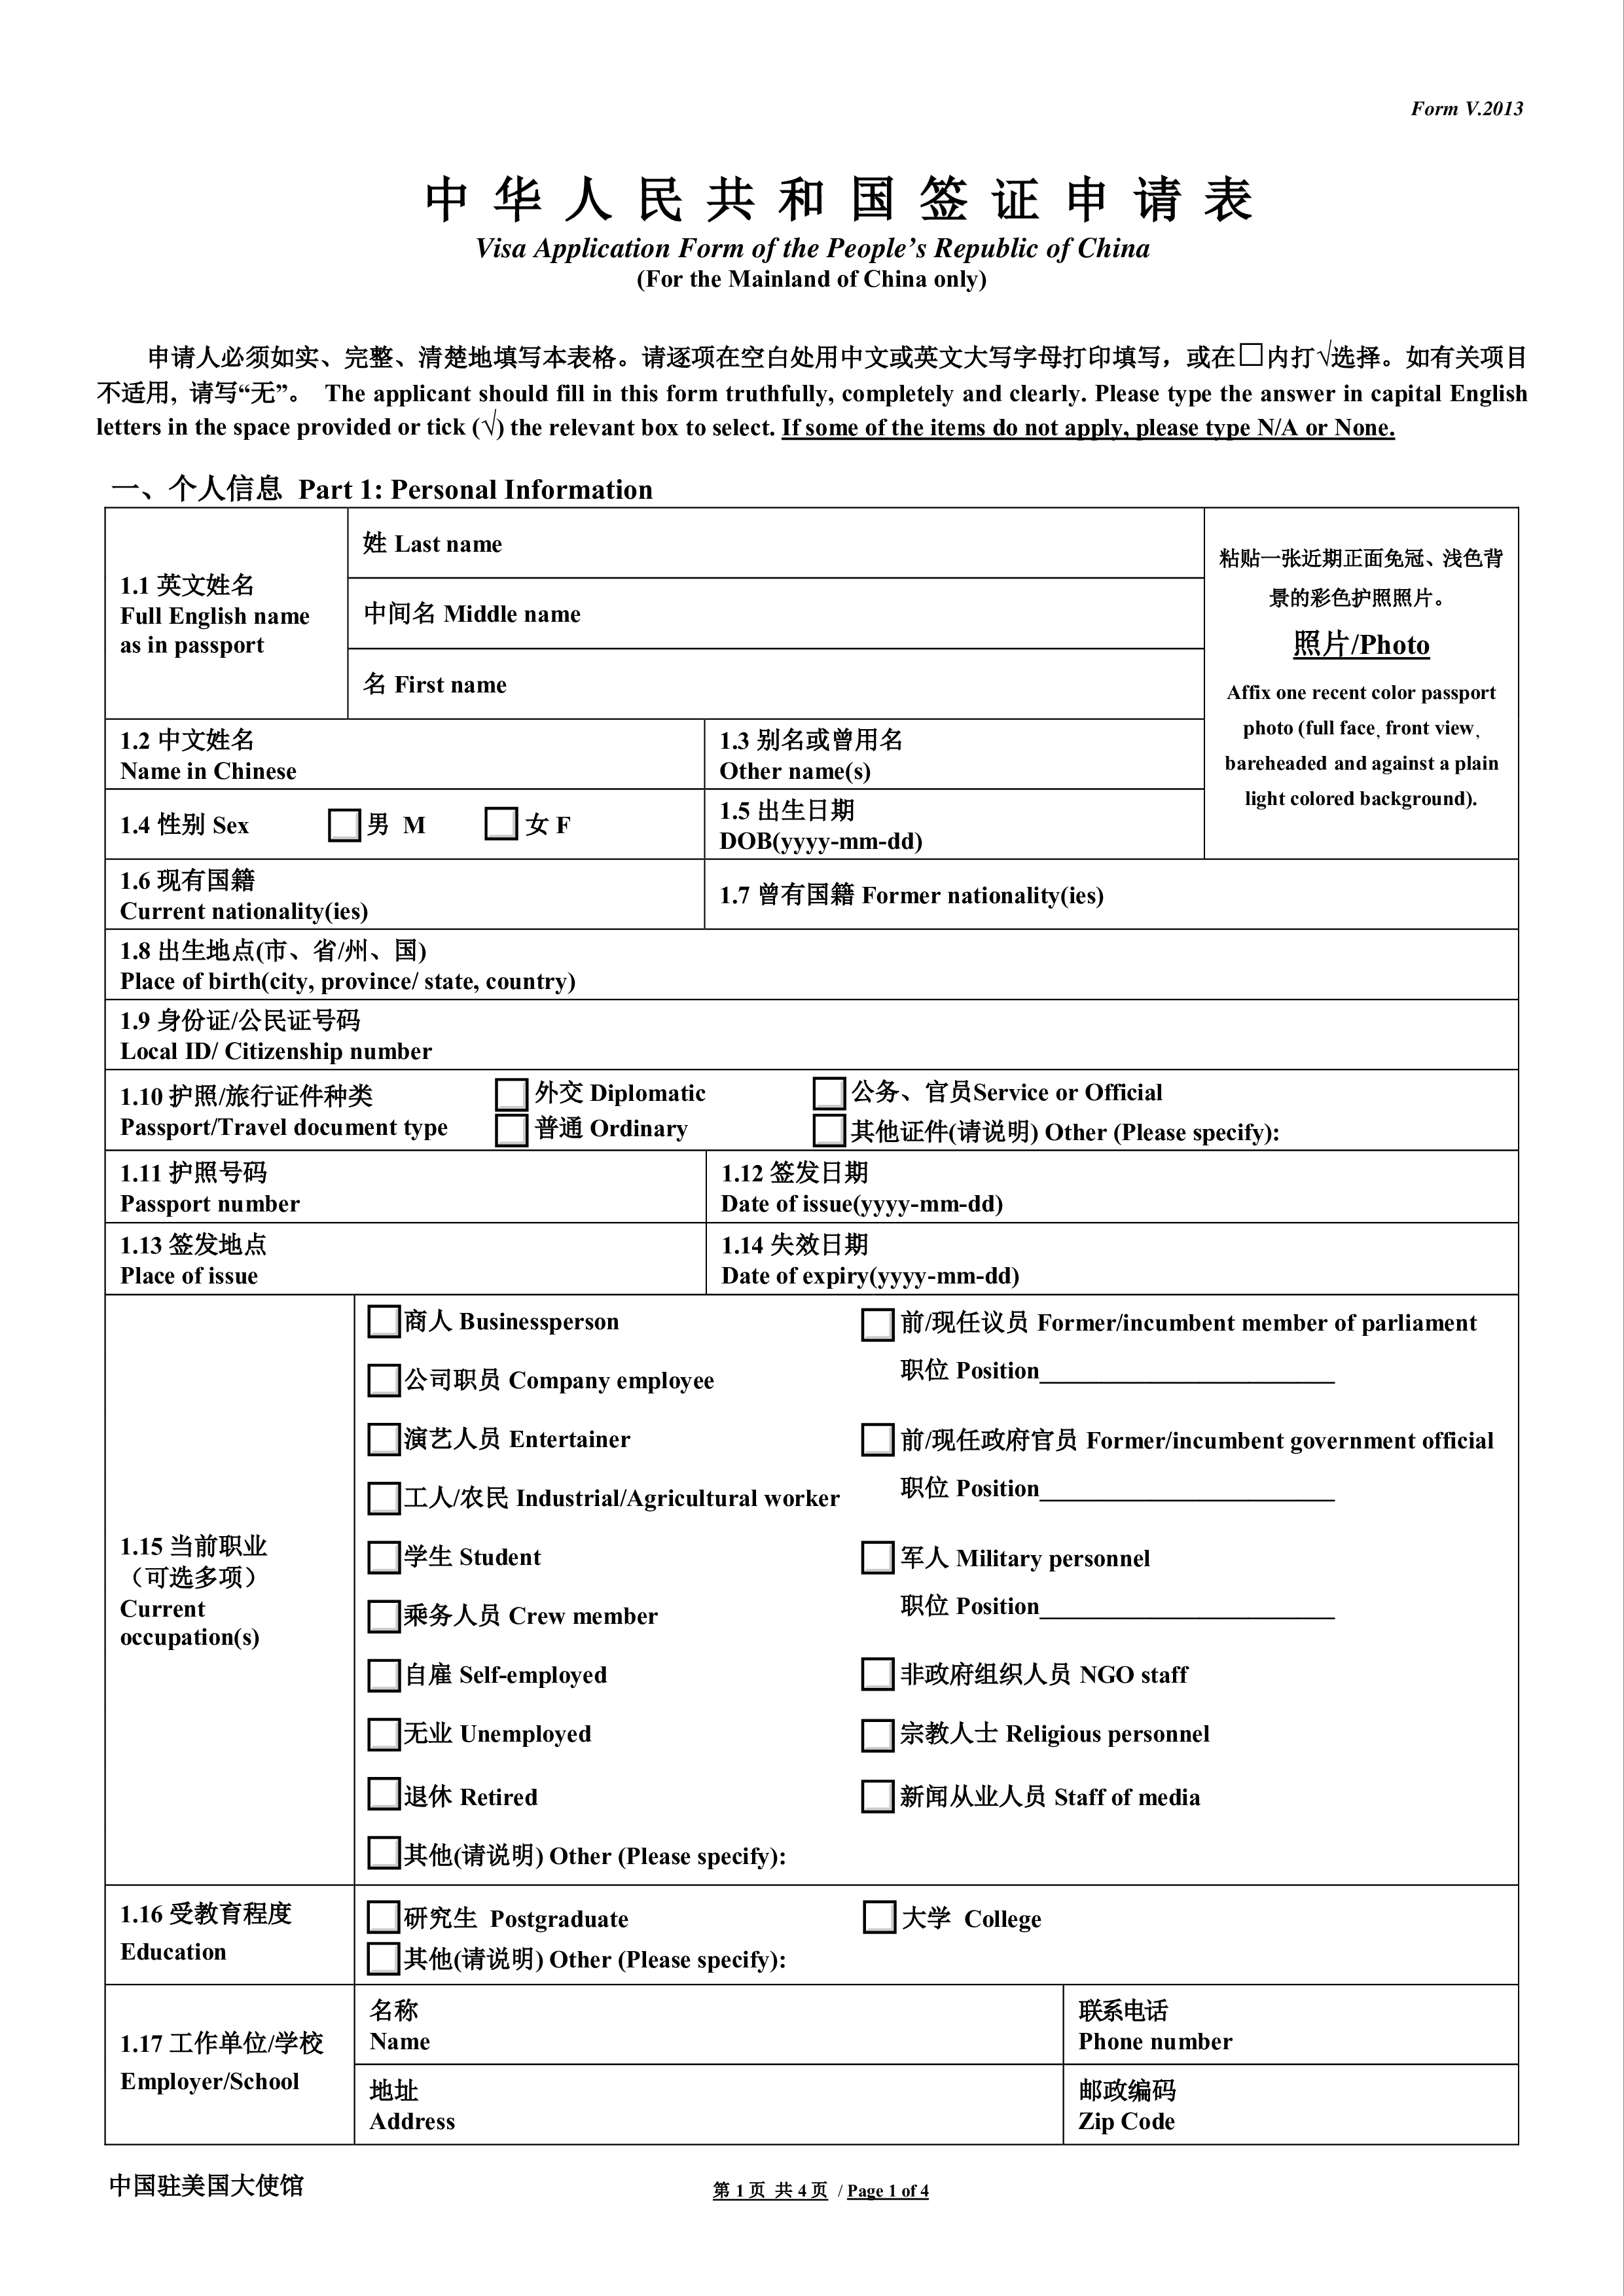 China Visa Application Form 模板